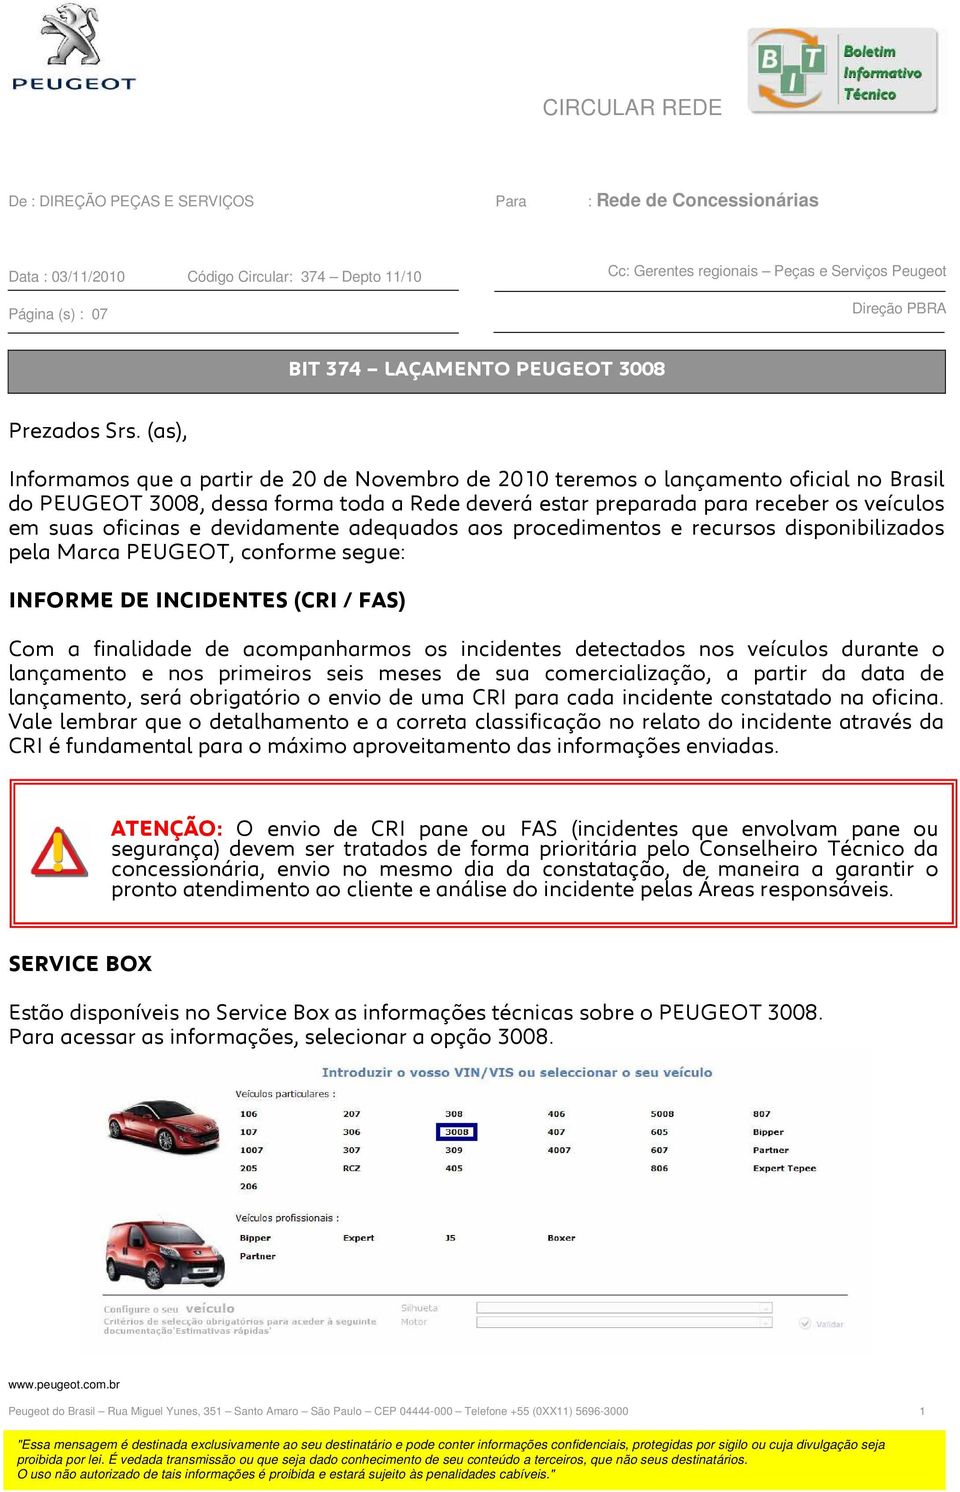 (as), Informamos que a partir de 20 de Novembro de 2010 teremos o lançamento oficial no Brasil do PEUGEOT 3008, dessa forma toda a Rede deverá estar preparada para receber os veículos em suas